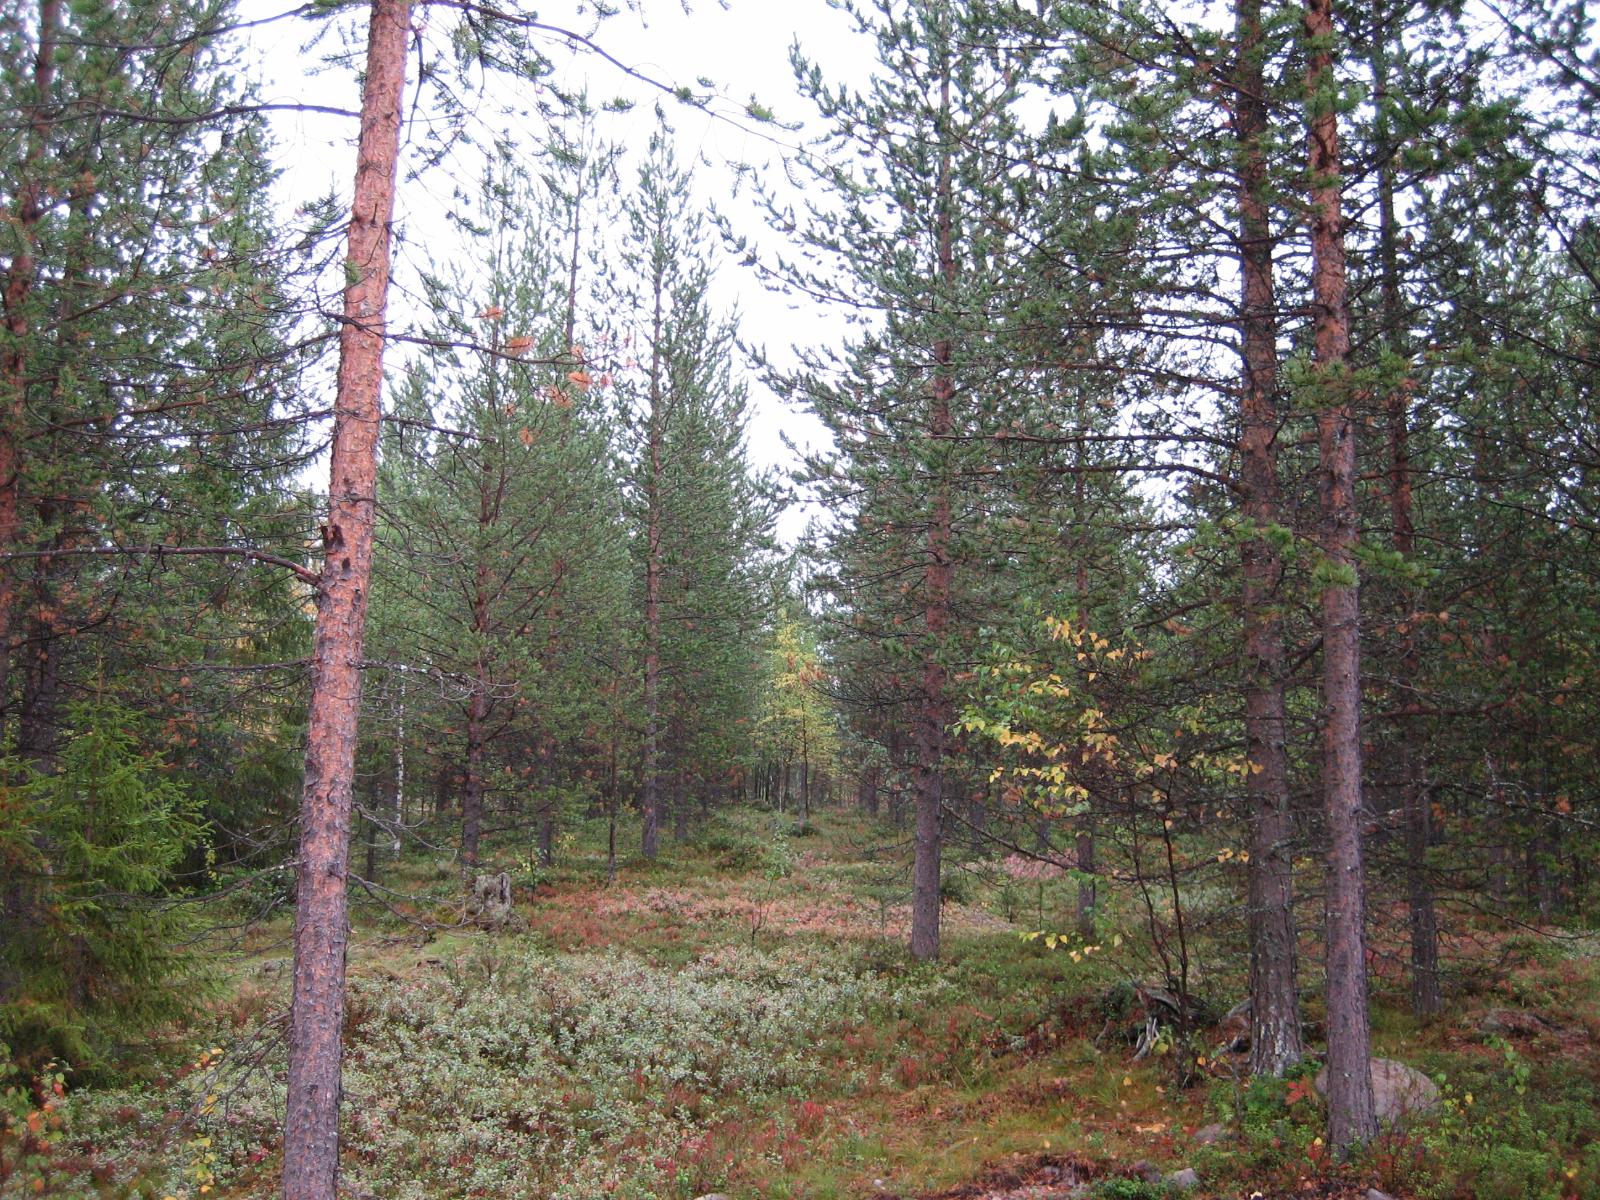 Syksyisessä metsässä kasvaa mäntyjä, kuusia ja nuoria koivuja. Maassa on ruskan sävyjä.